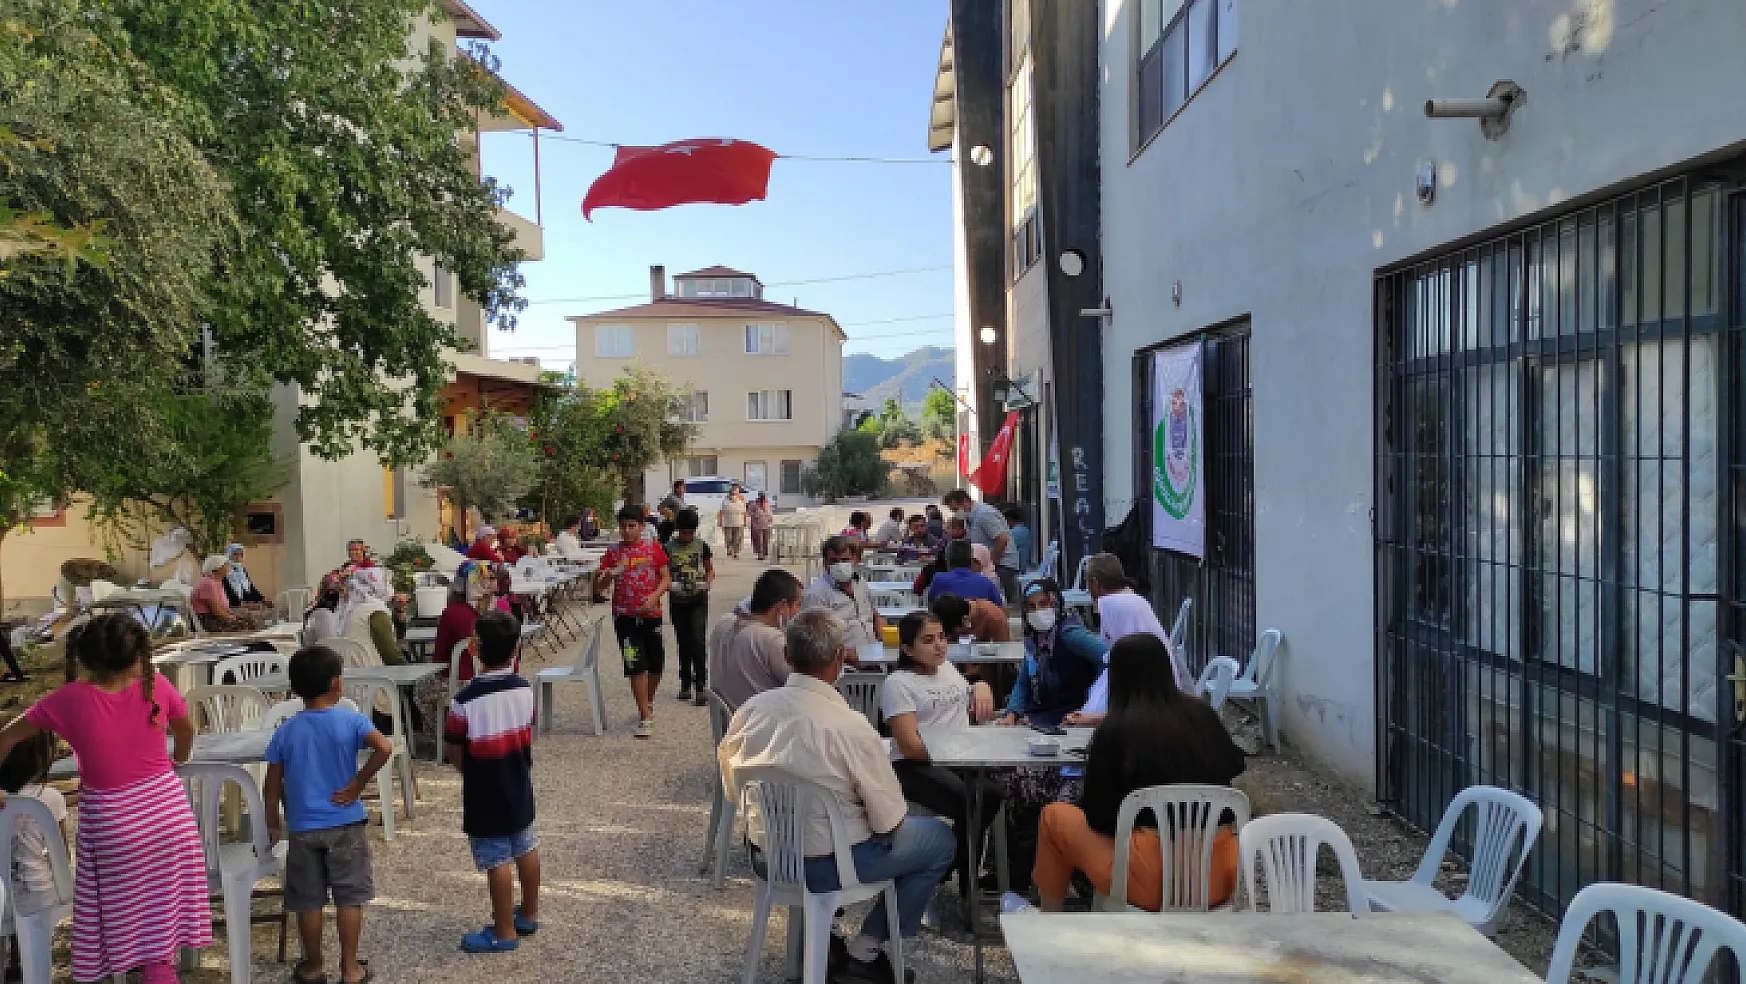 Karaçulha Gönüllüleri Derneği Hamza Özkaraca için 3500 kişilik aşure ikramında bulundu